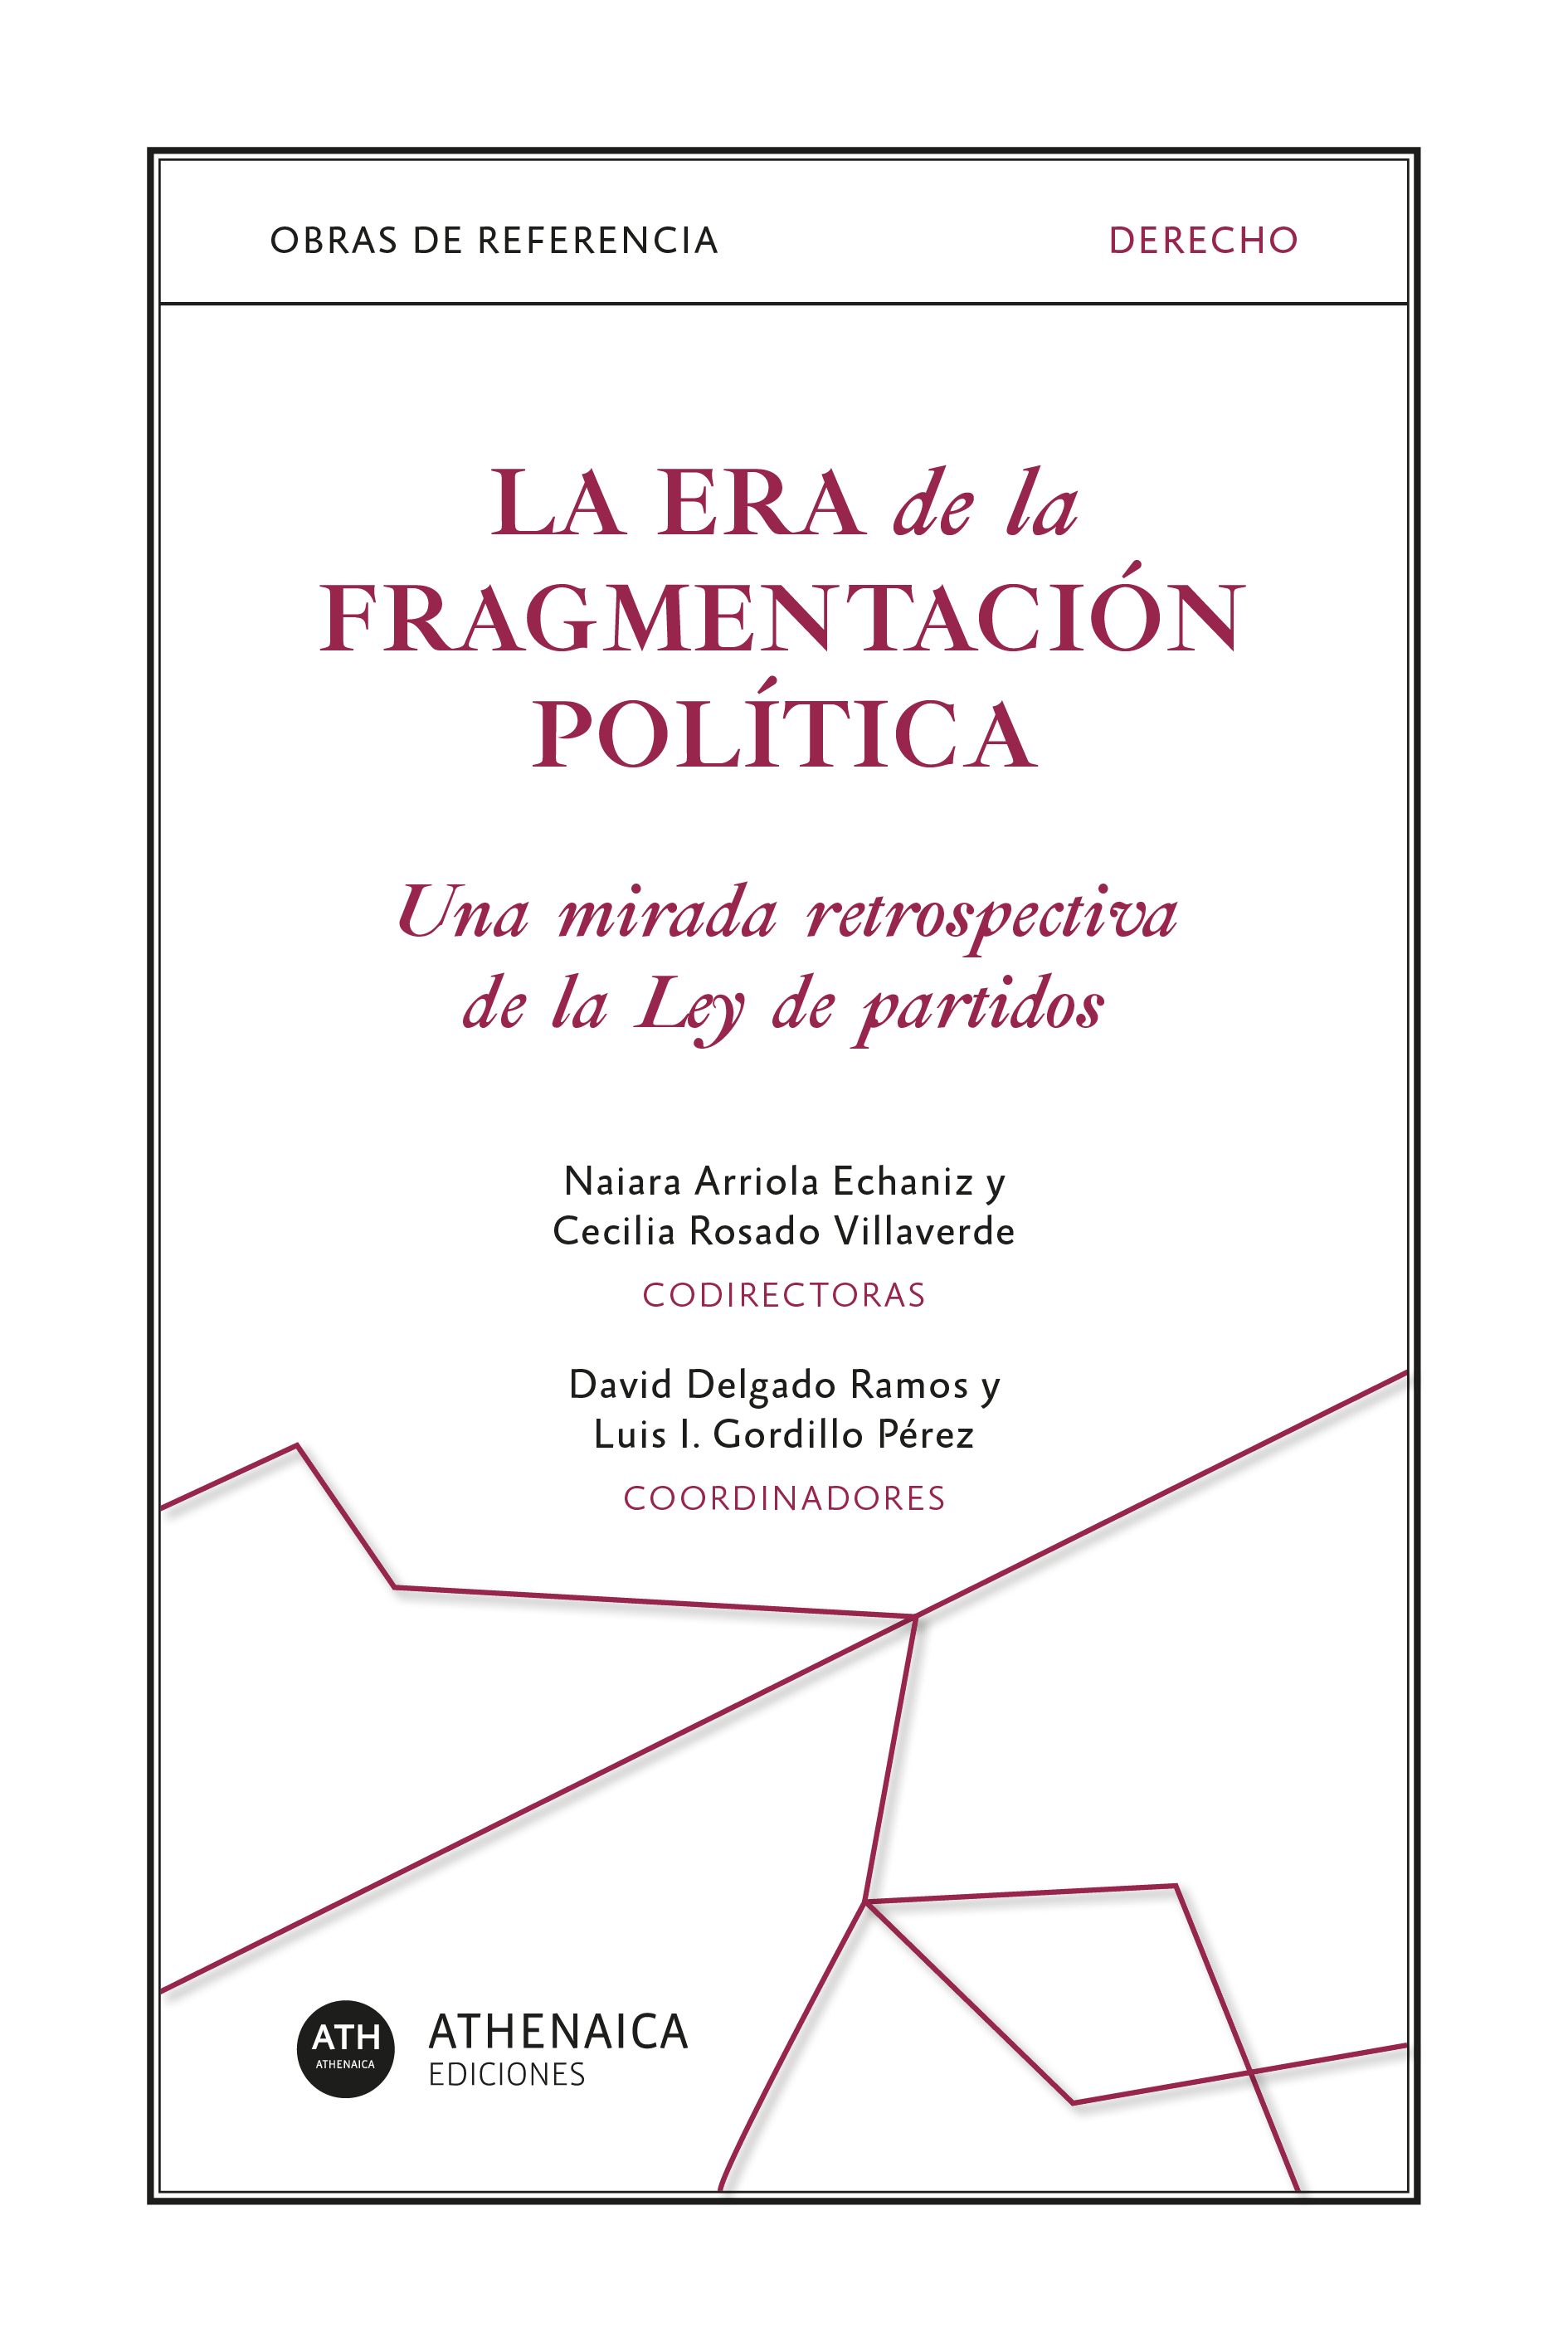 Imagen de portada del libro La era de la fragmentación política